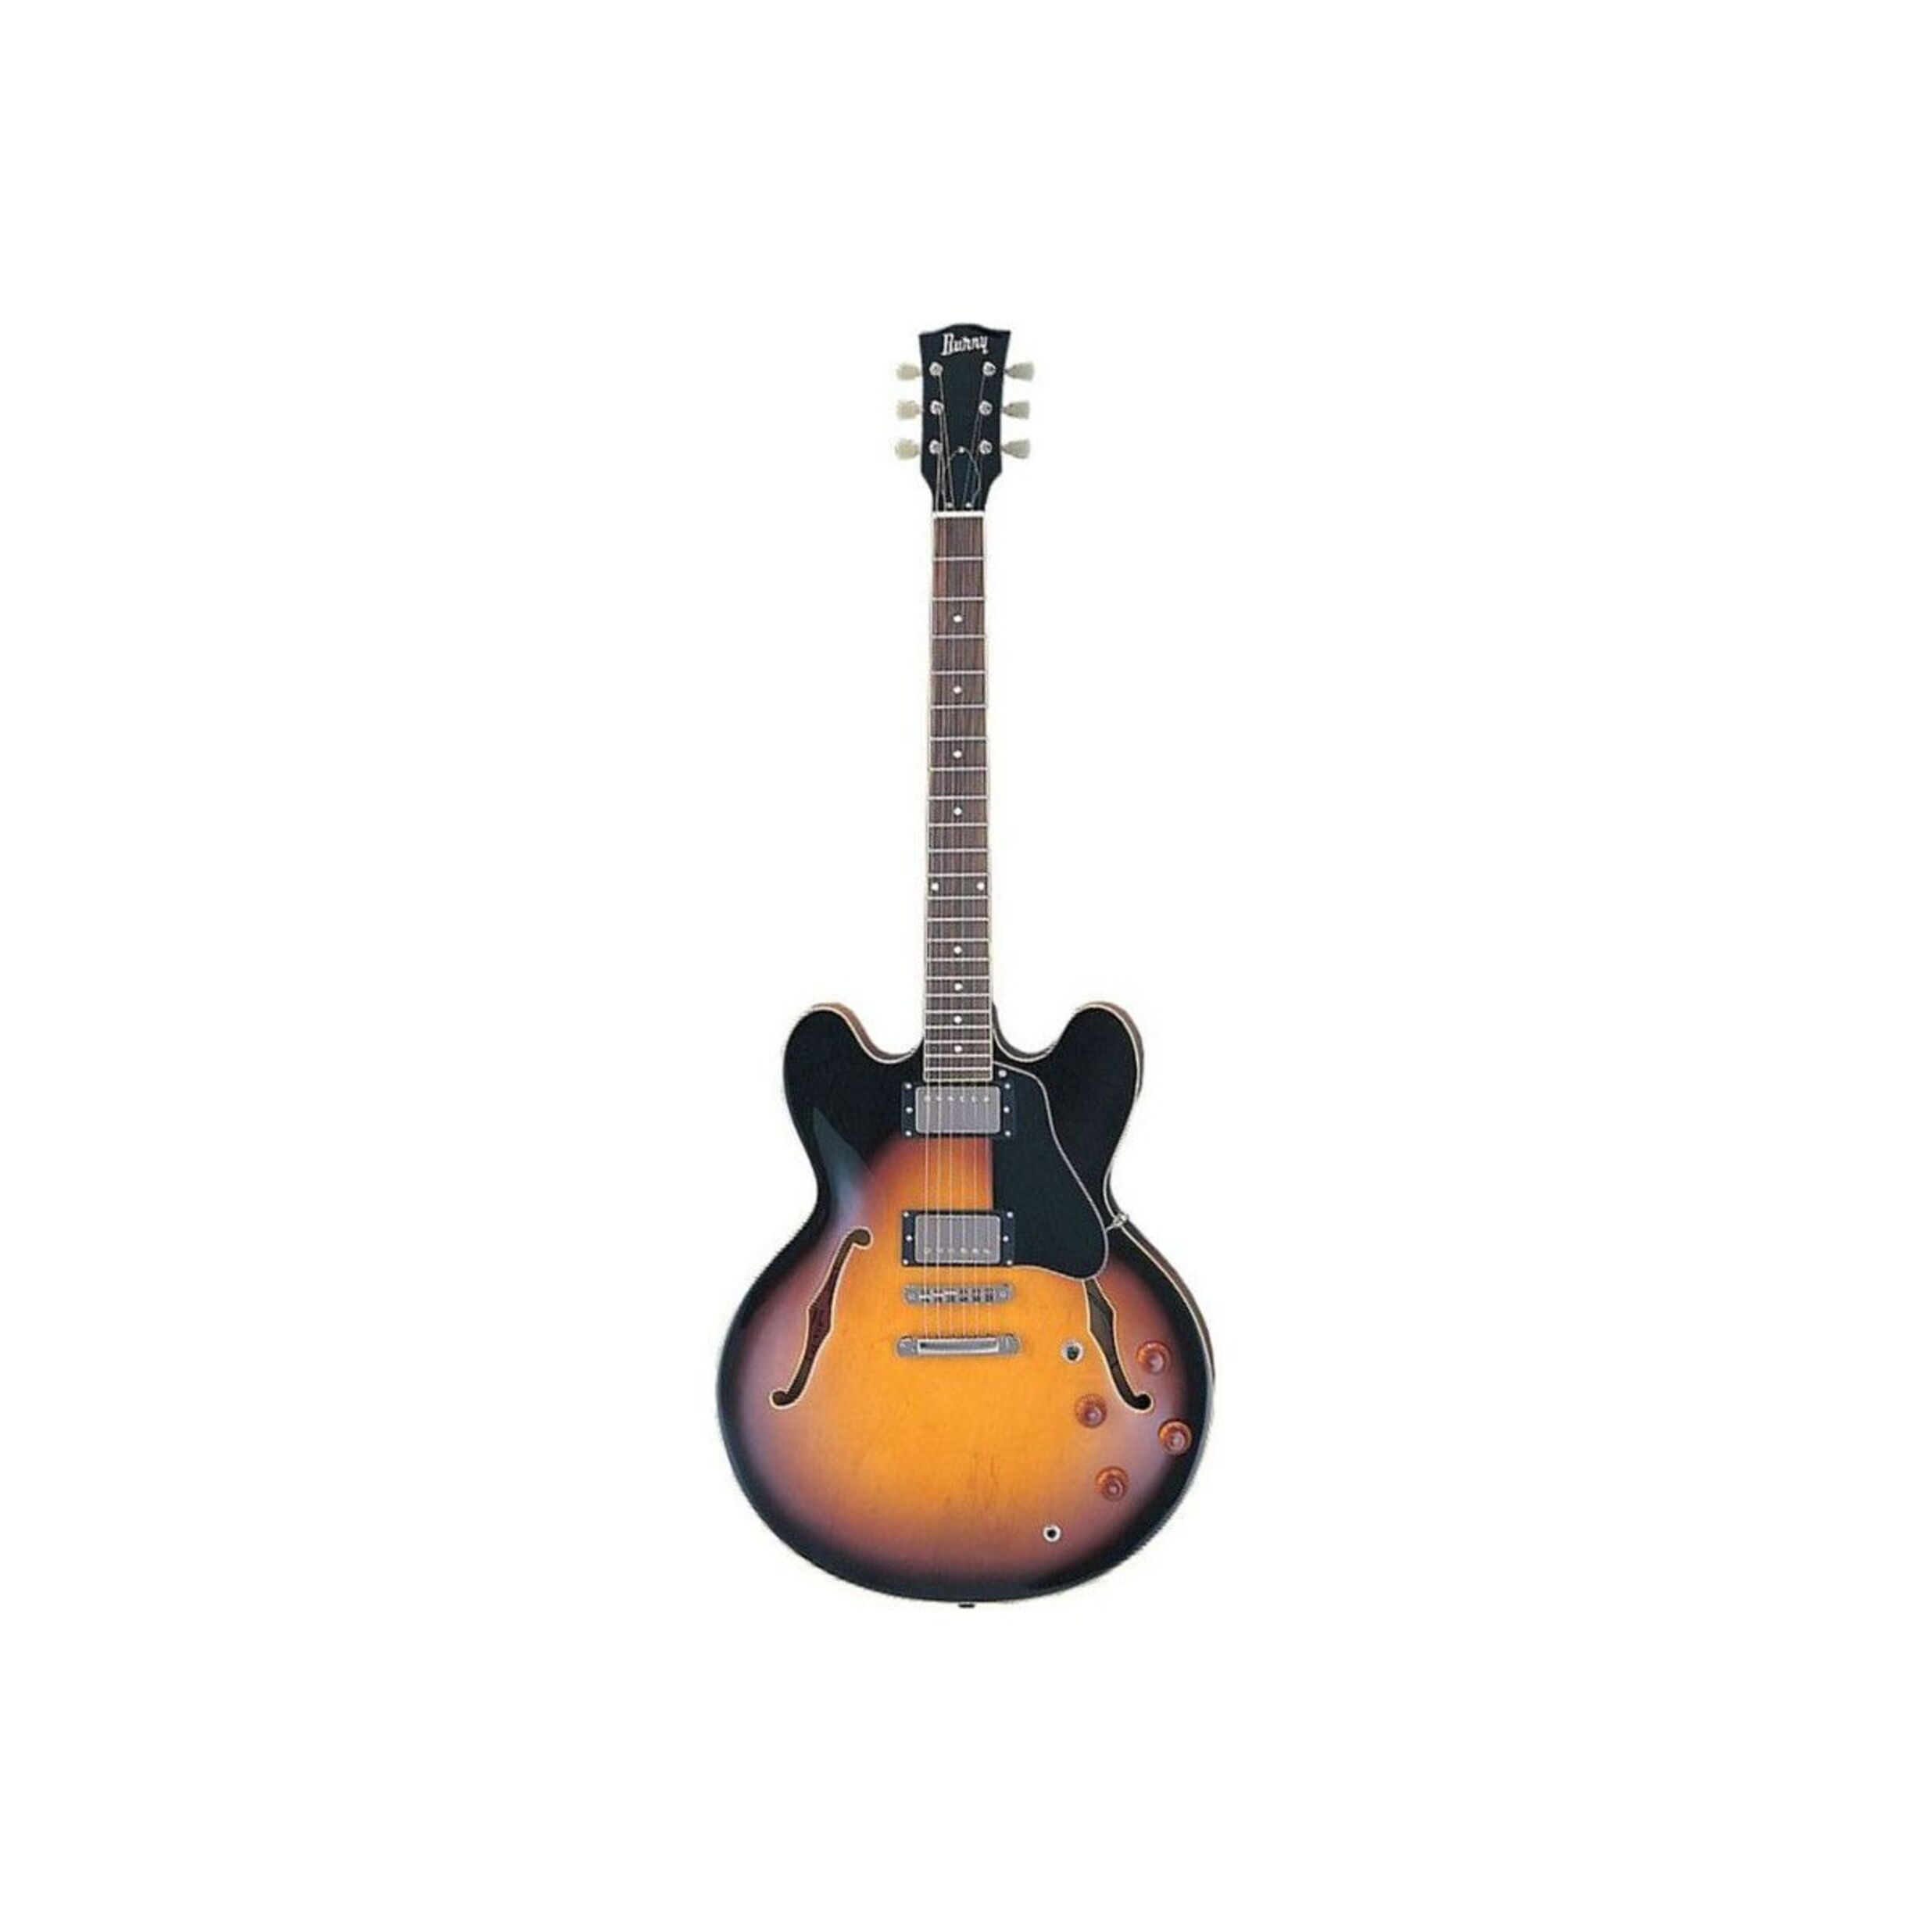 Полуакустические гитары Burny RSA70 BS (кейс в комплекте) полуакустические гитары foix feg feg kg 17 nat